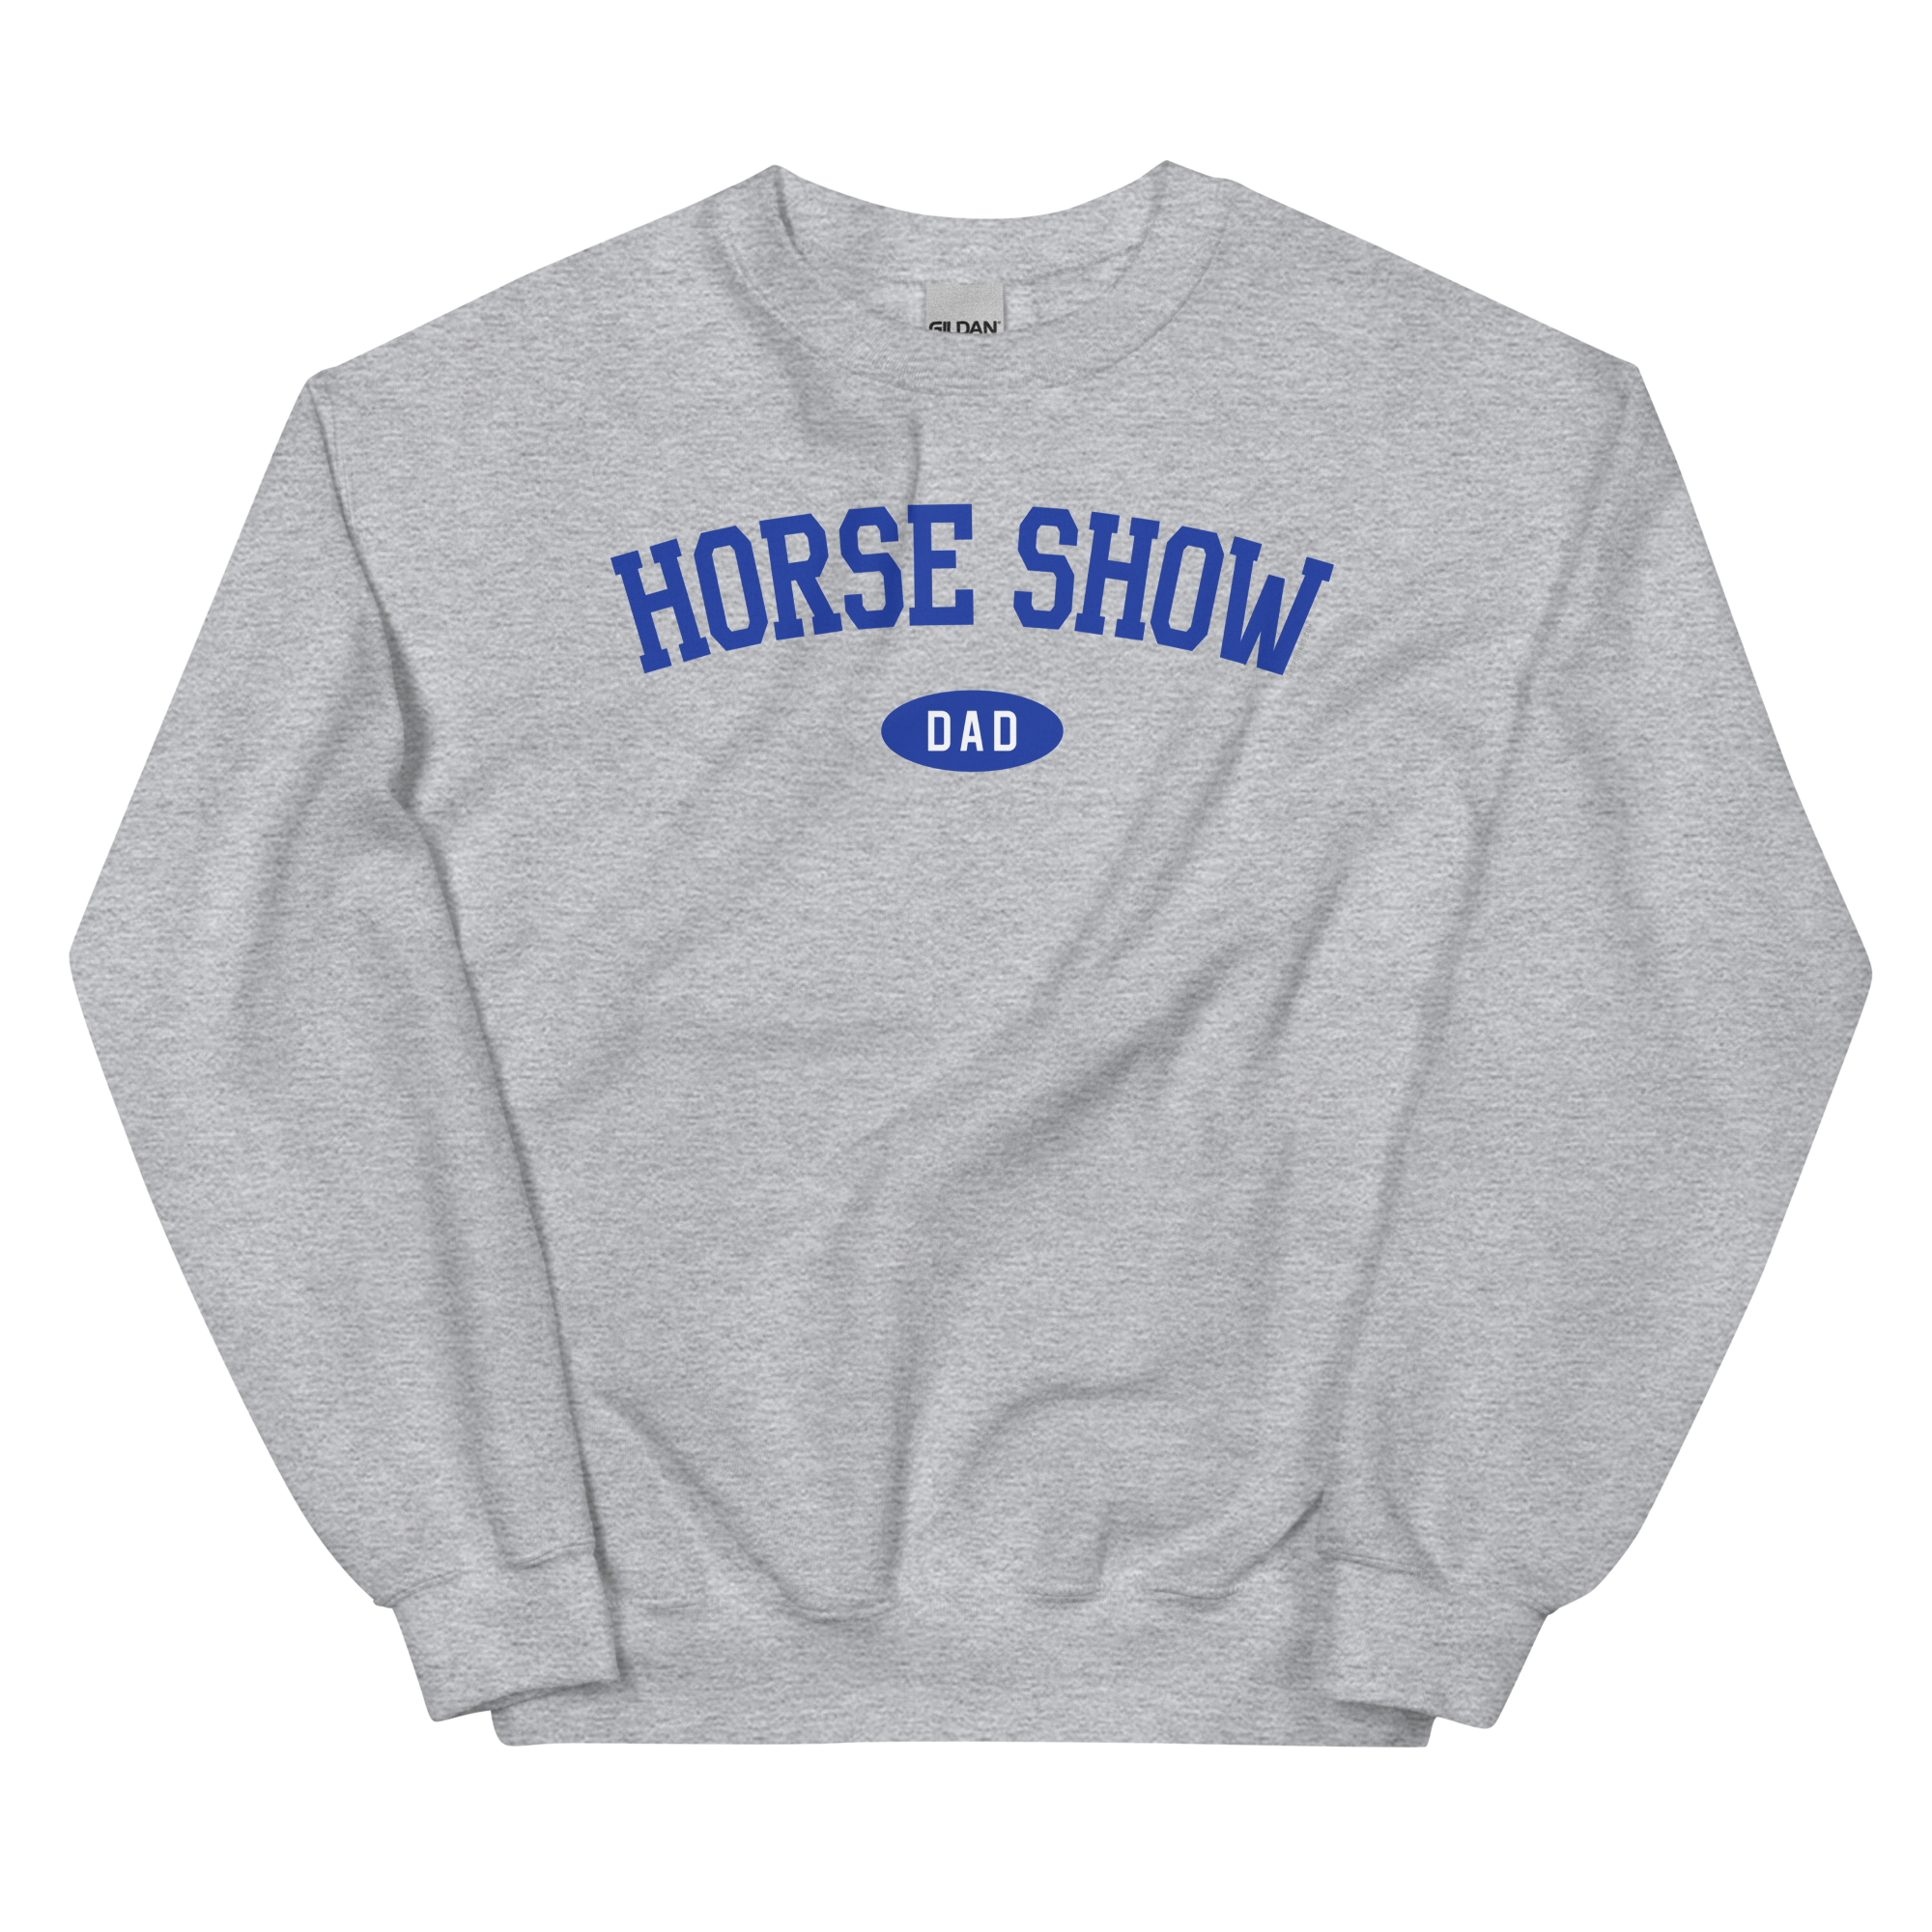 Horse Show Dad Crewneck Sweatshirt